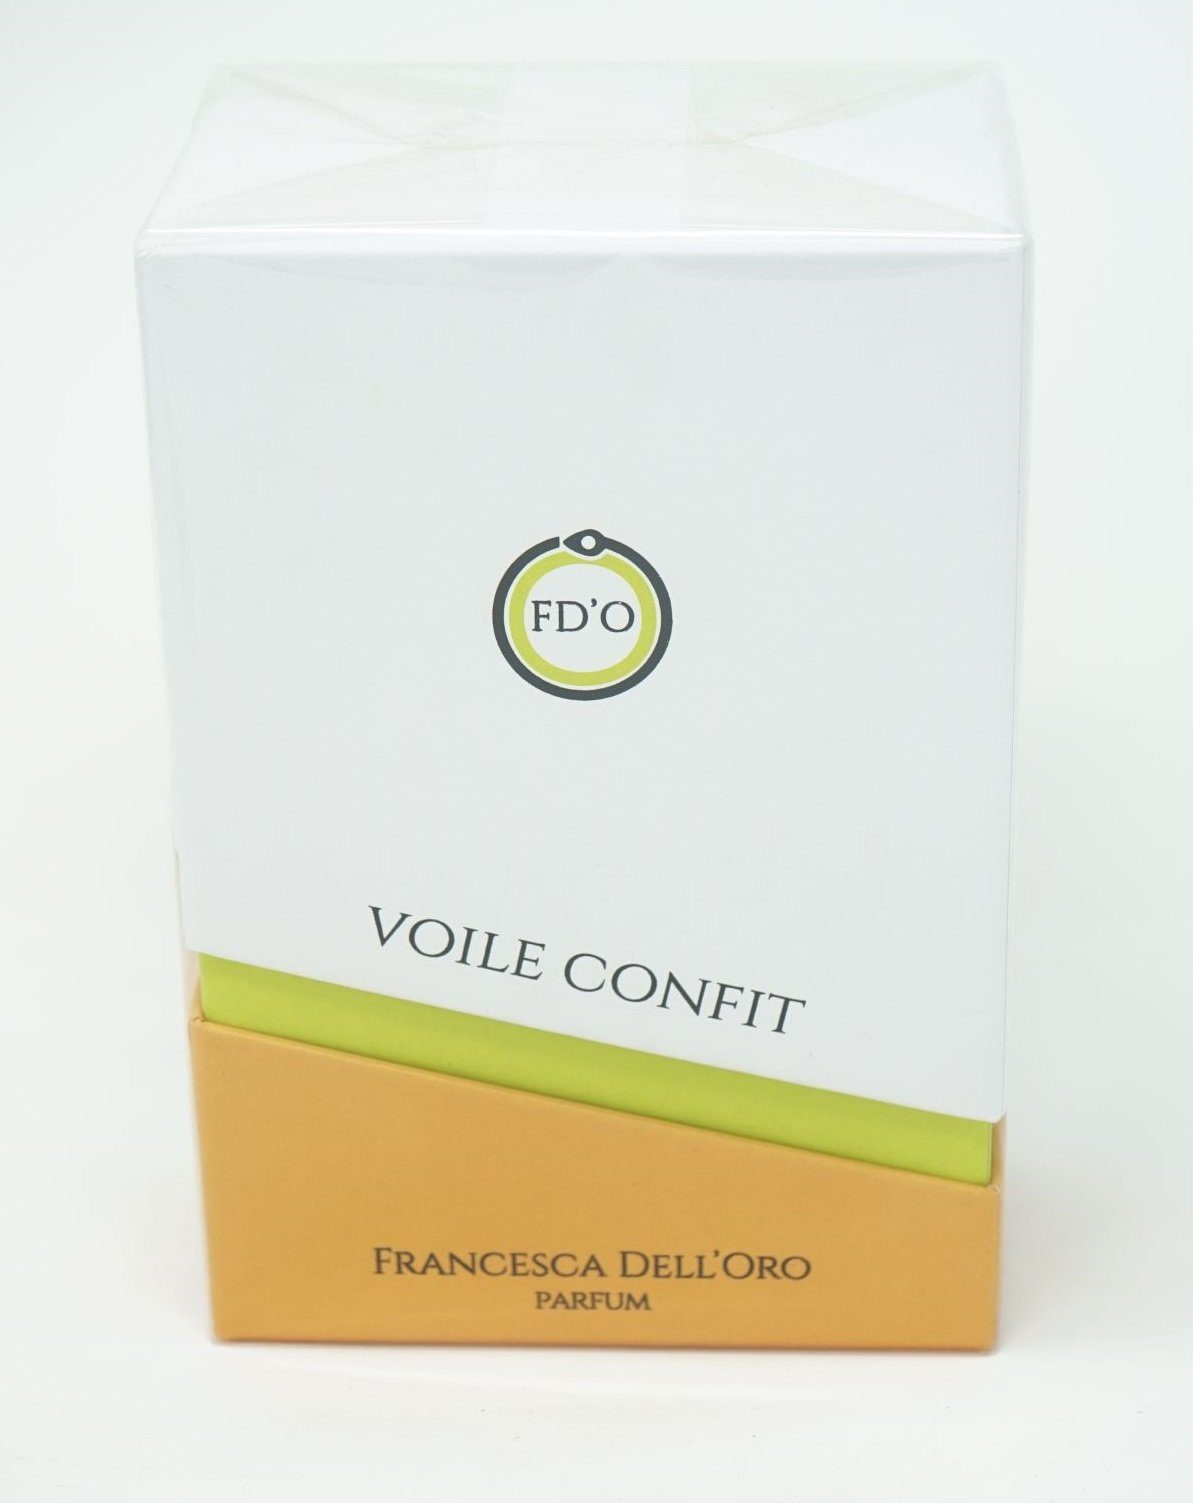 Tiziana Terenzi Eau de Parfum Francesca Dell'Oro Voile Confit Parfum 100 ml